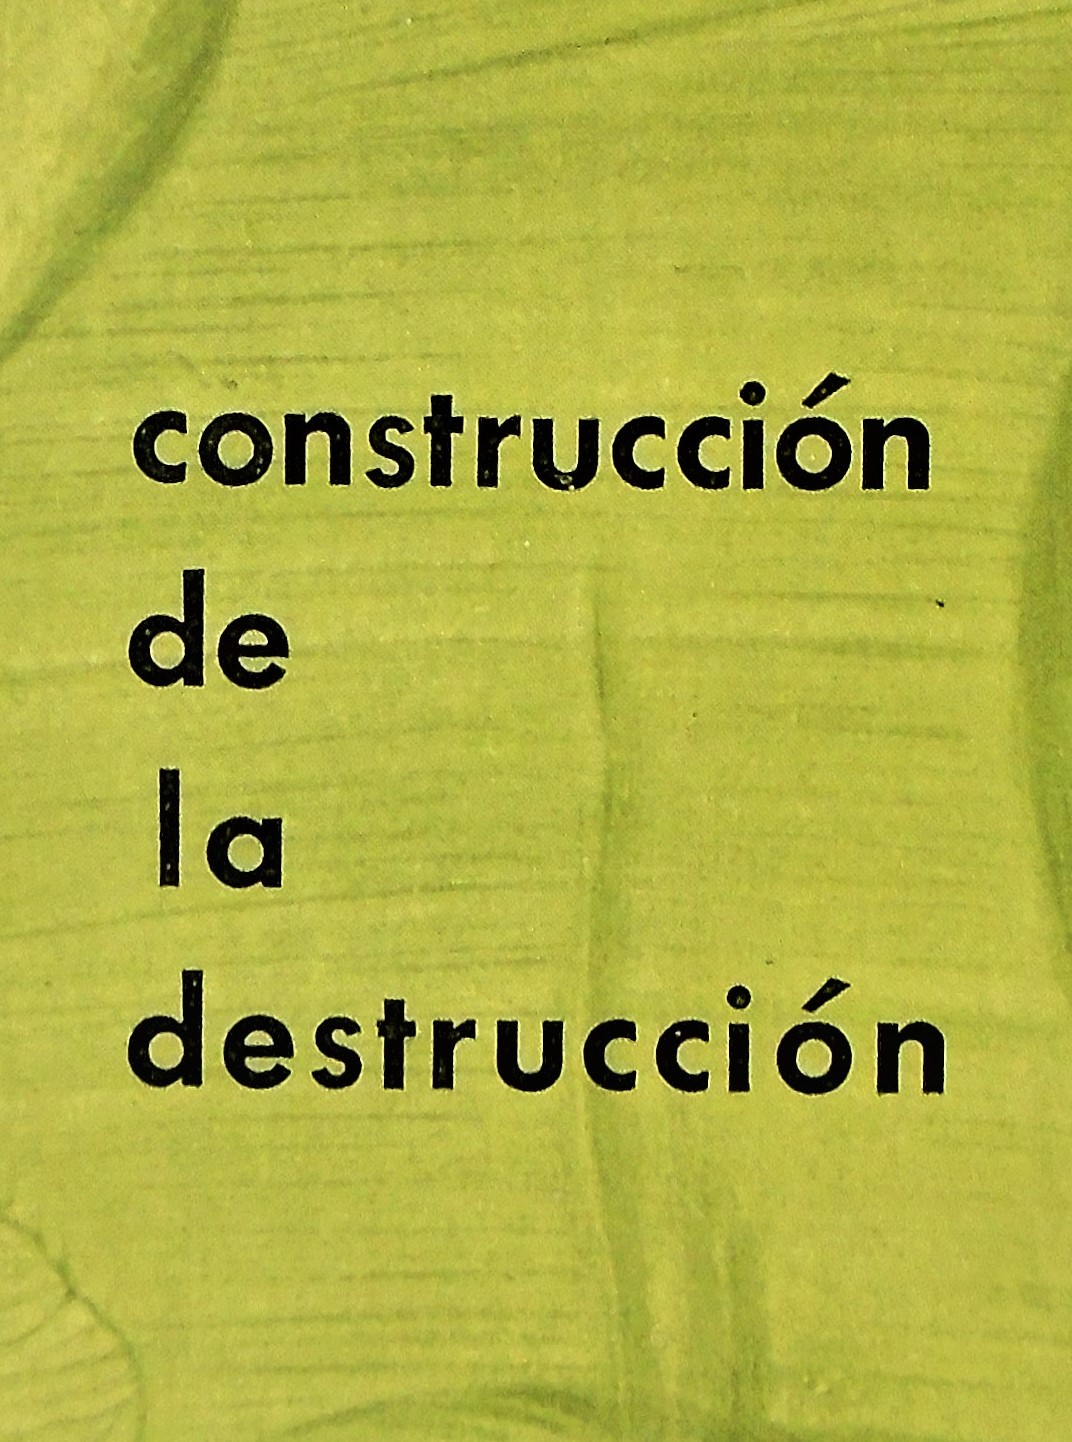 Aldo Pellegrini - Construcción de la destrucción